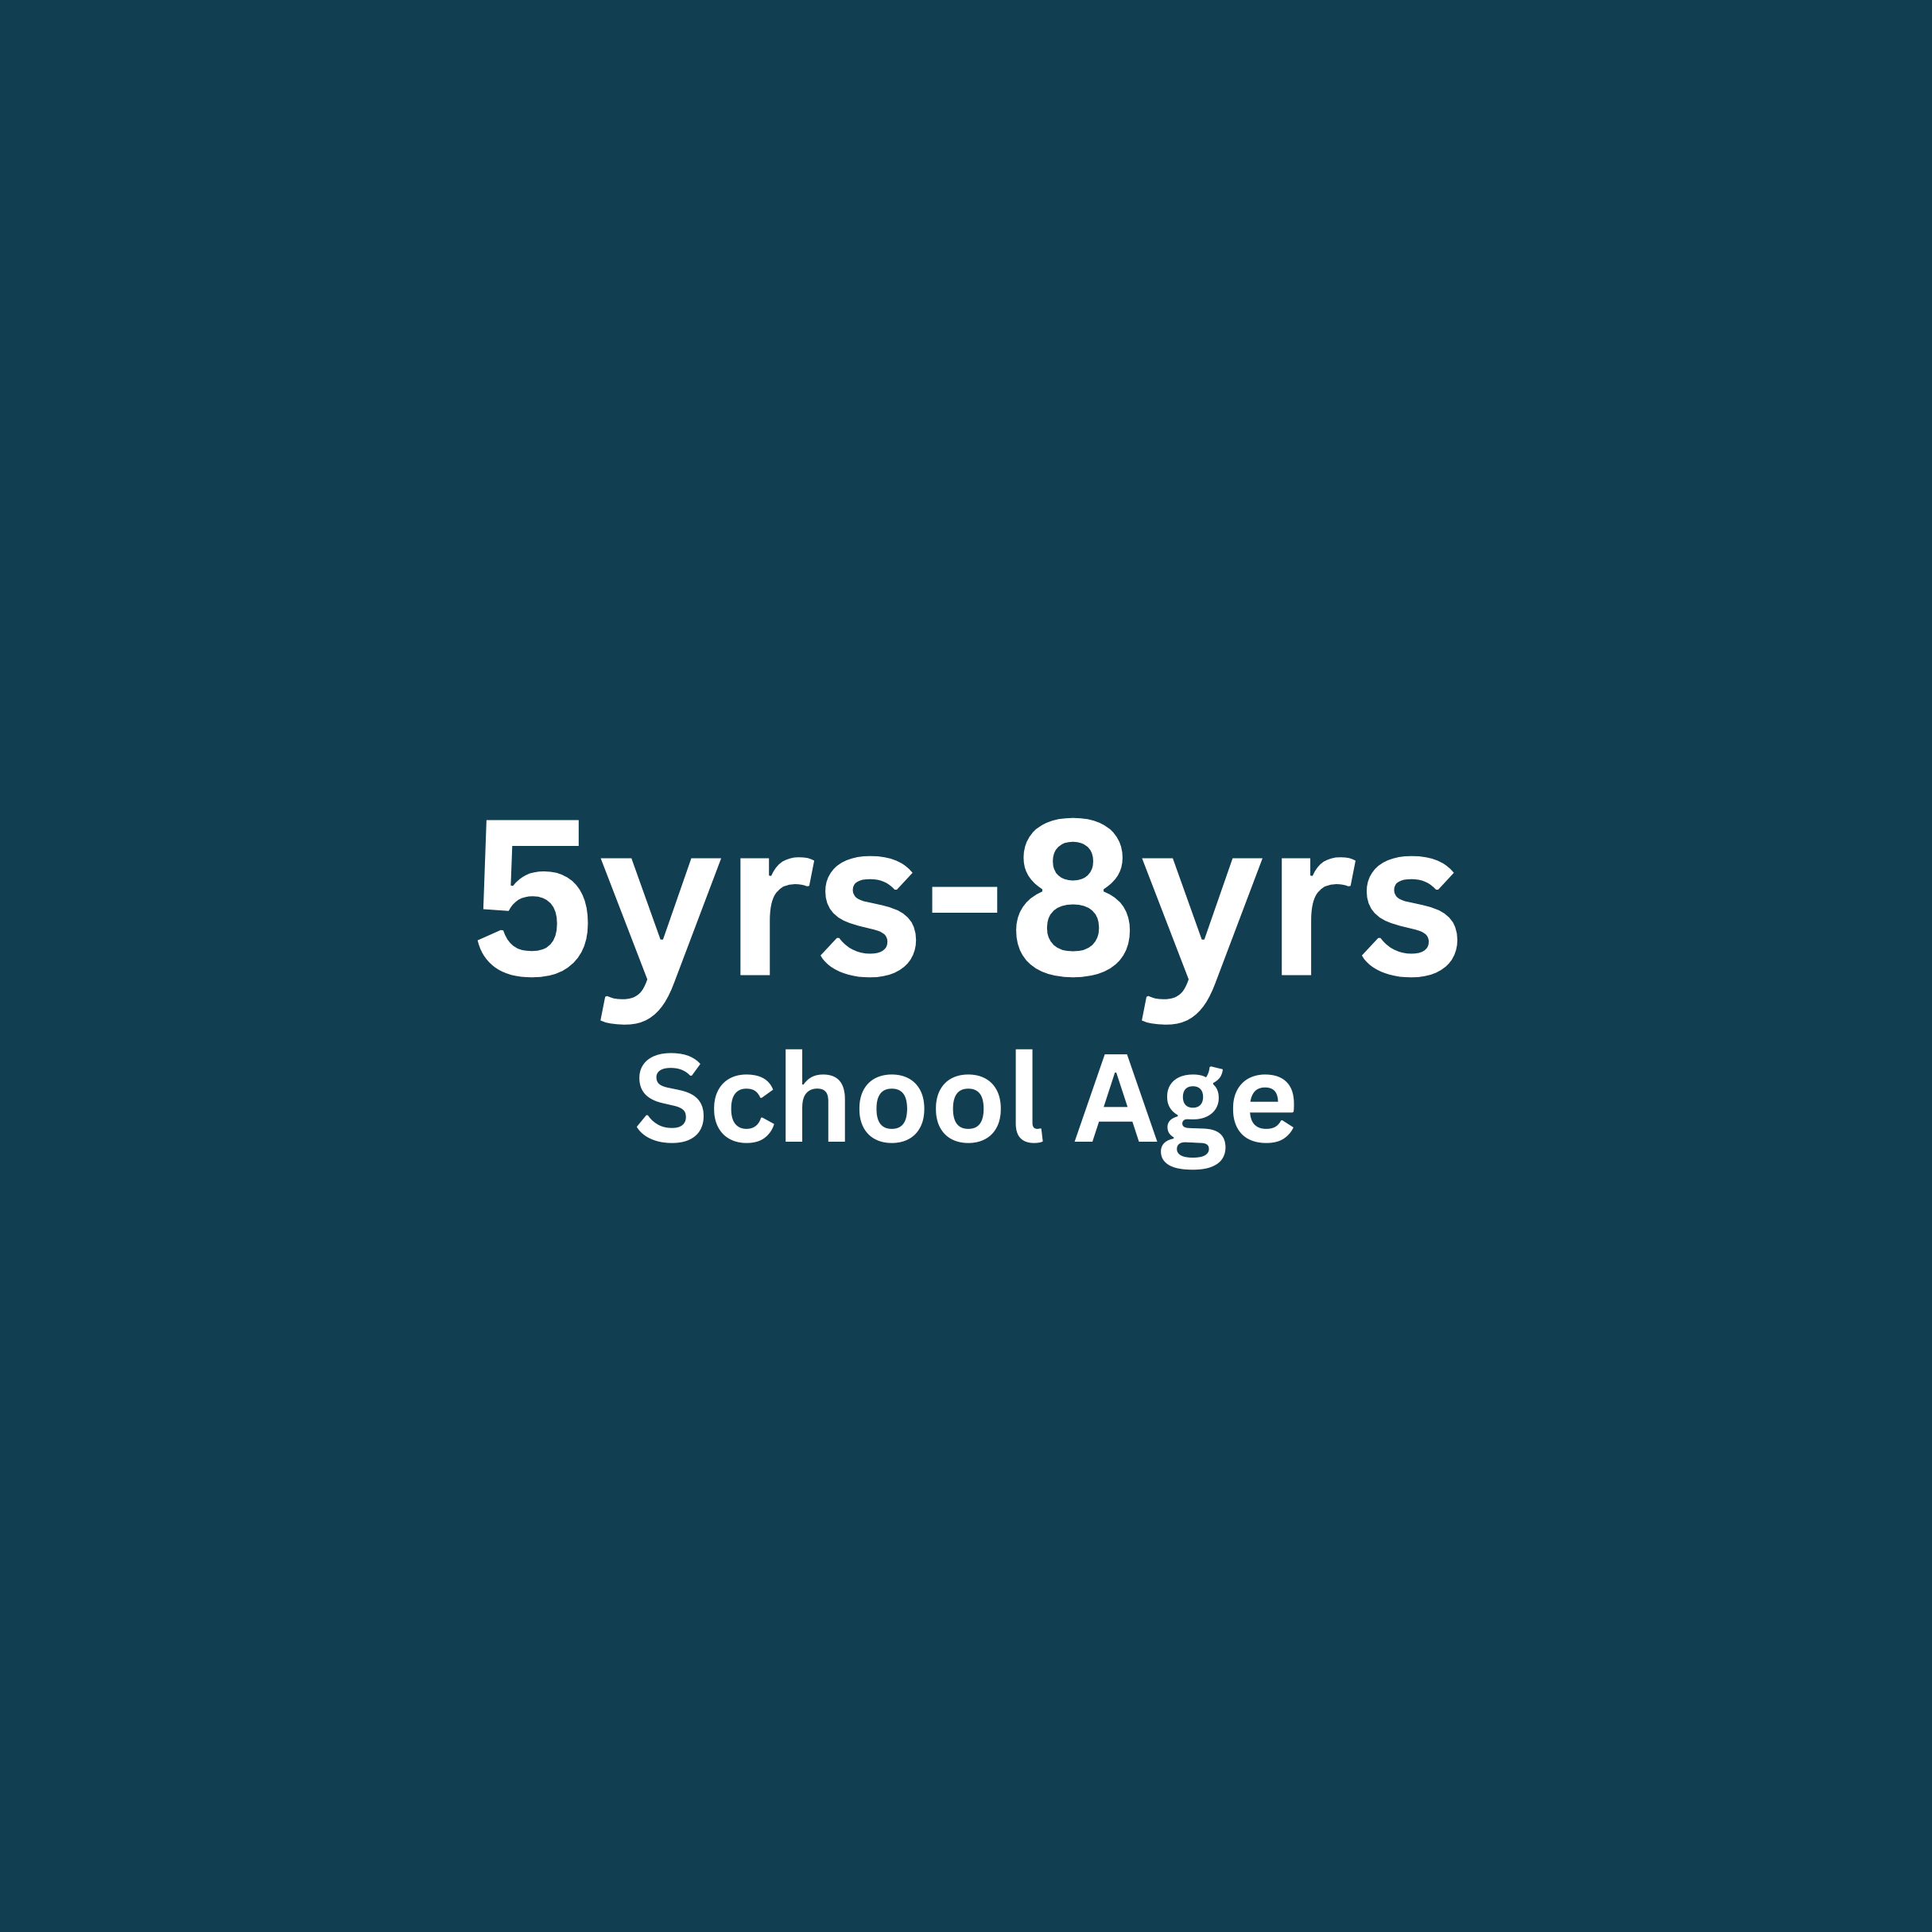 School Age 5yrs-8yrs